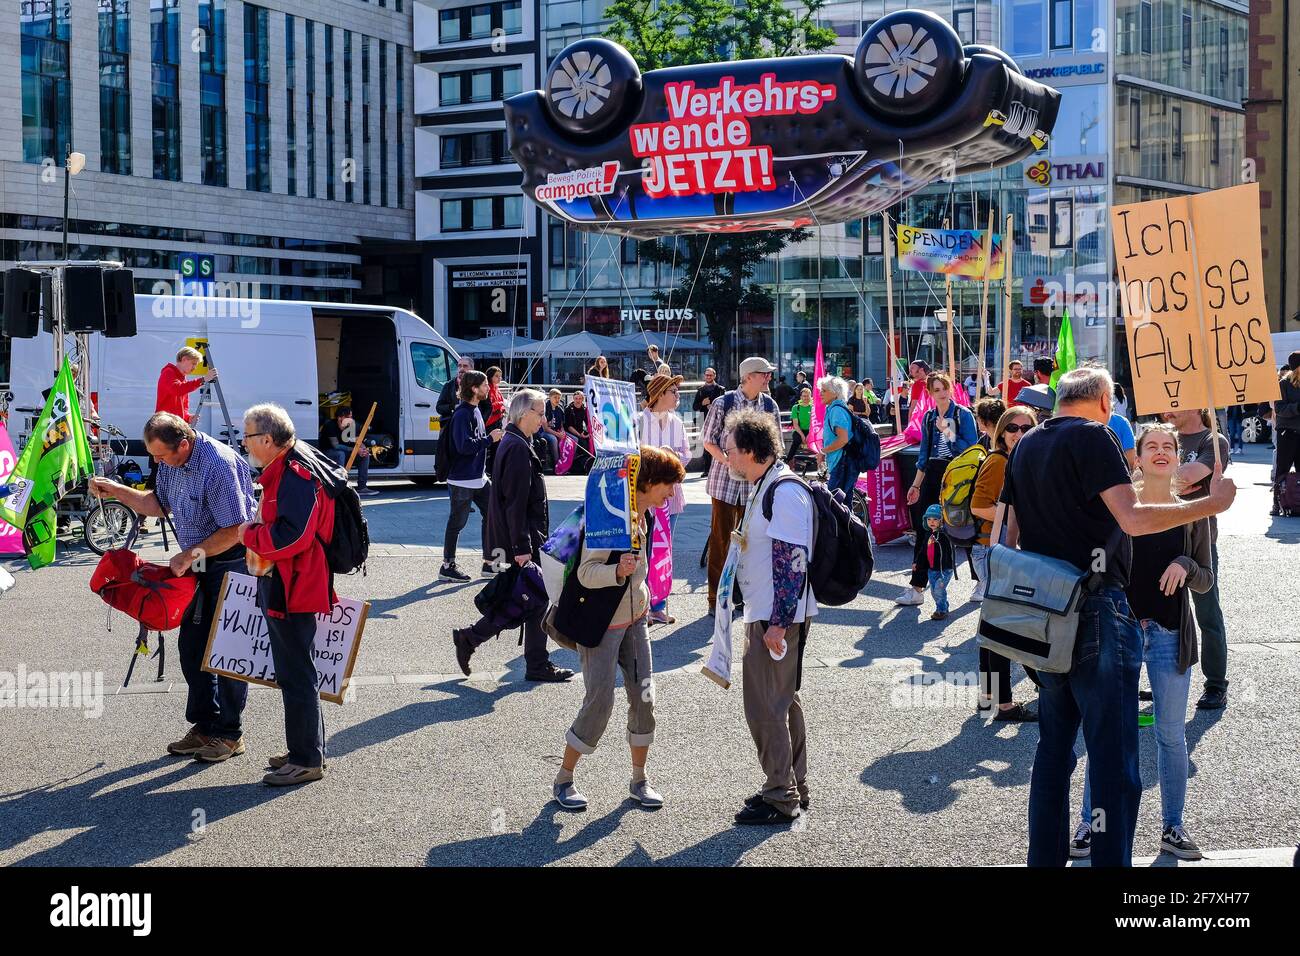 14.09.2019, Francfort-sur-le-main, Hessen, Deutschland - Auf dem Platz an der Hauptwache in Frankfurt versammeln sich Demonstranten und Vertreter verschie Banque D'Images